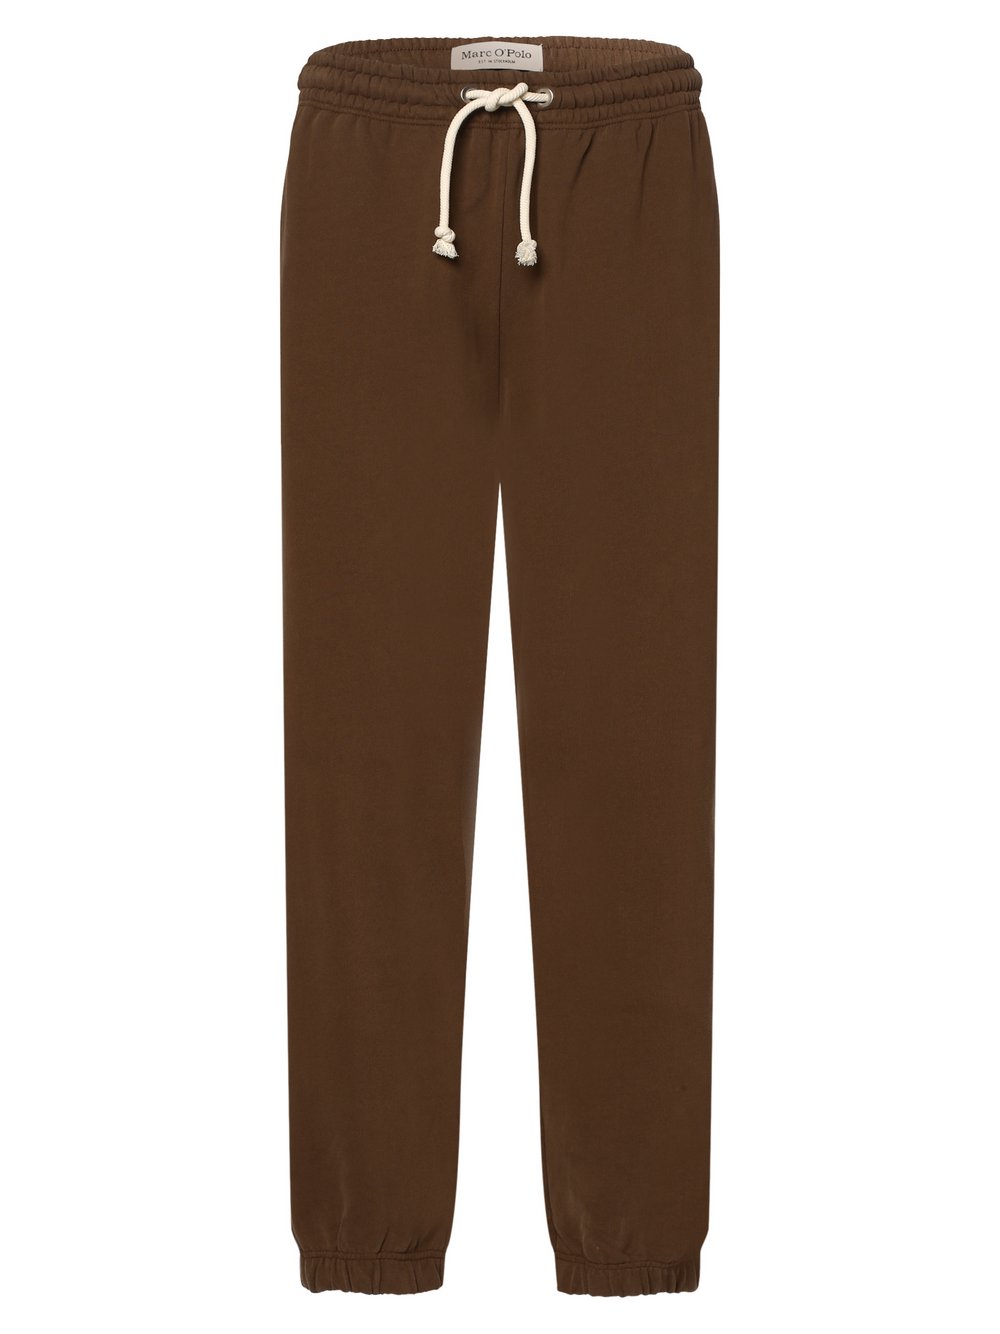 Marc O'Polo - Damskie spodnie dresowe, brązowy